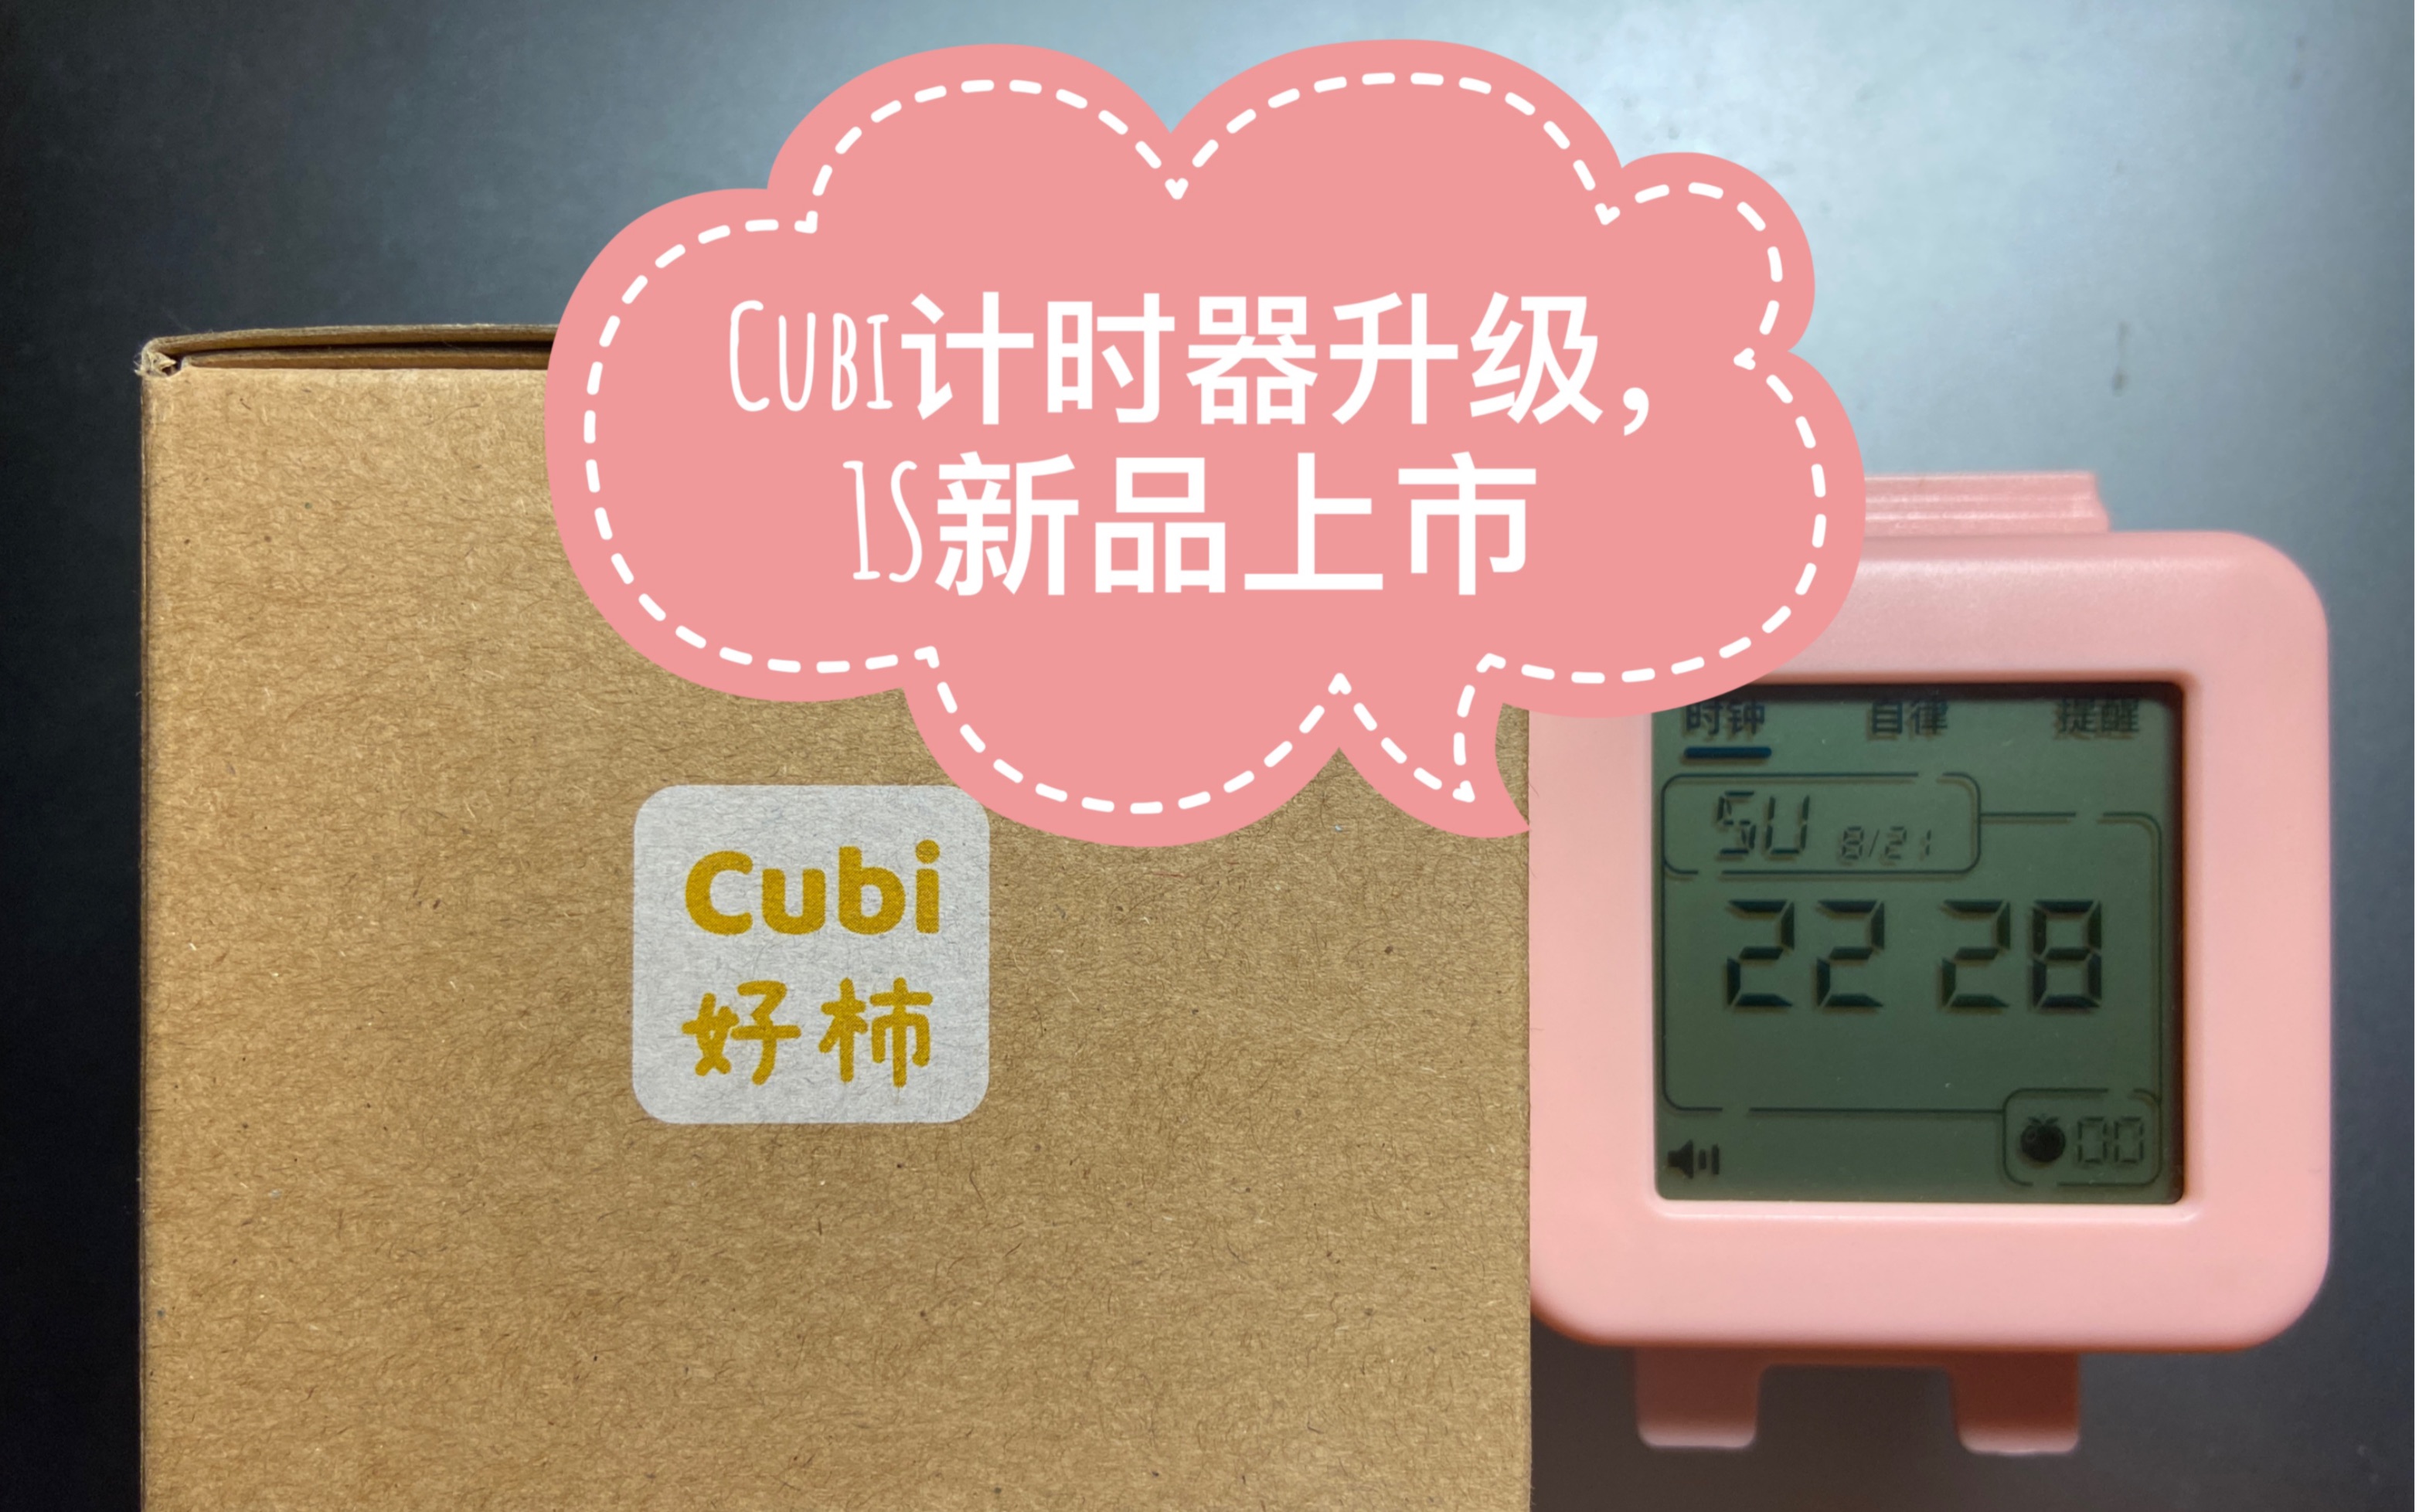 看见时间 『Cubi 1S 』好杮 Cubi计时器功能升级